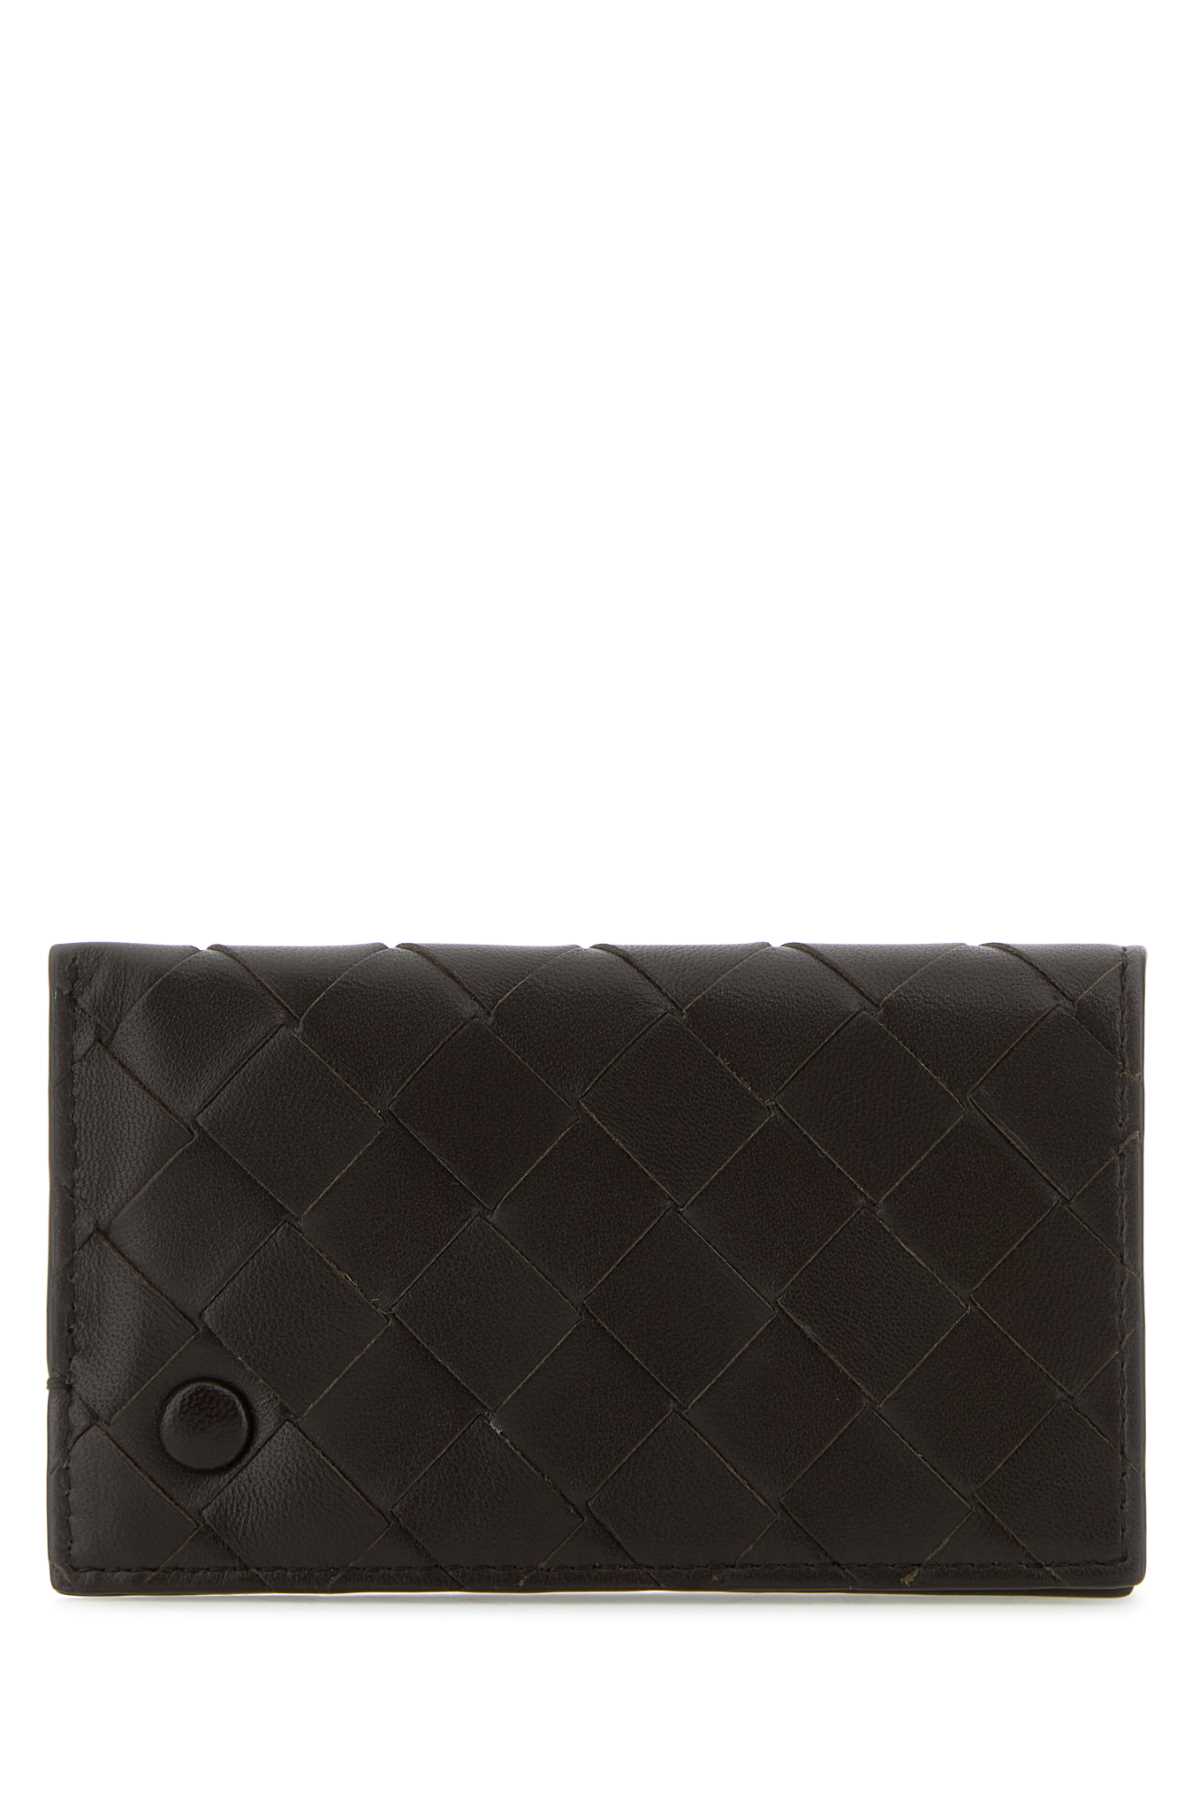 Shop Bottega Veneta Dark Brown Nappa Leather Card Holder In Fondant